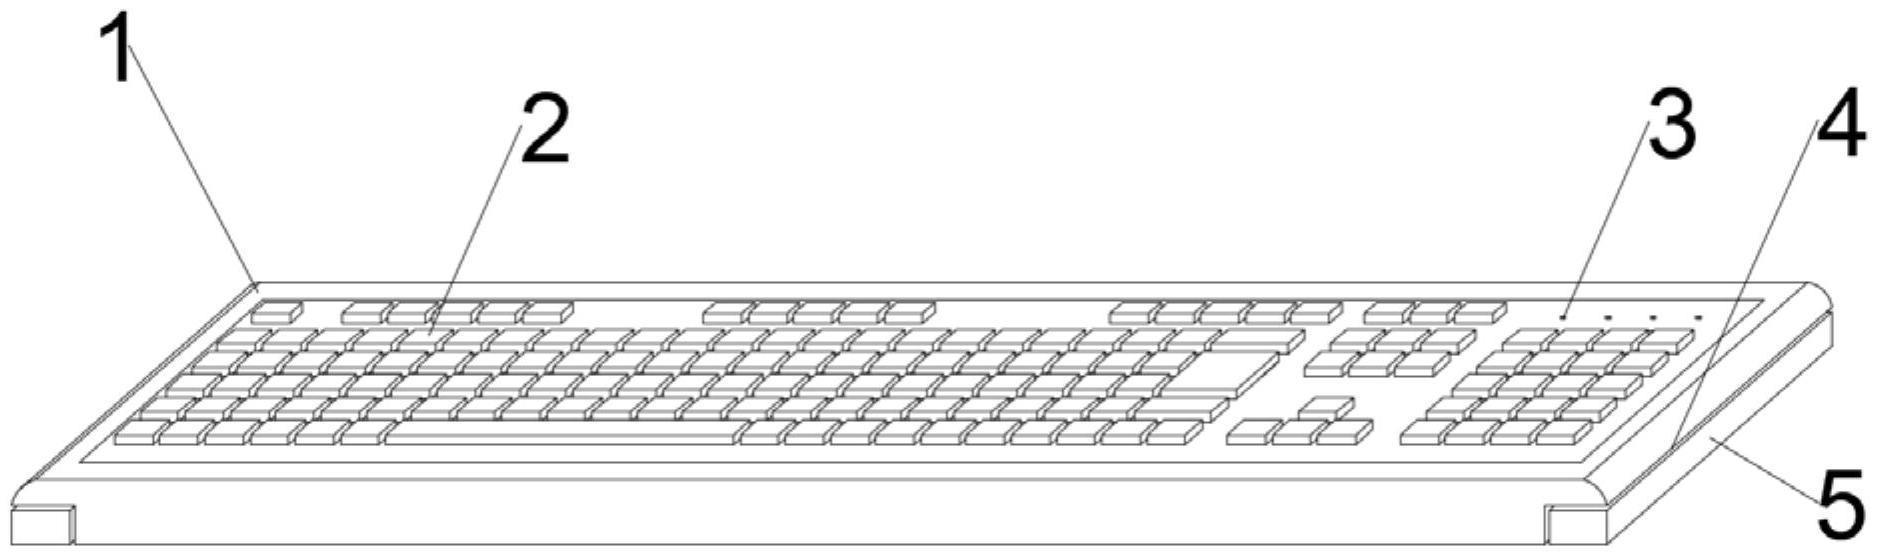 平板电脑用的外接键盘的制作方法